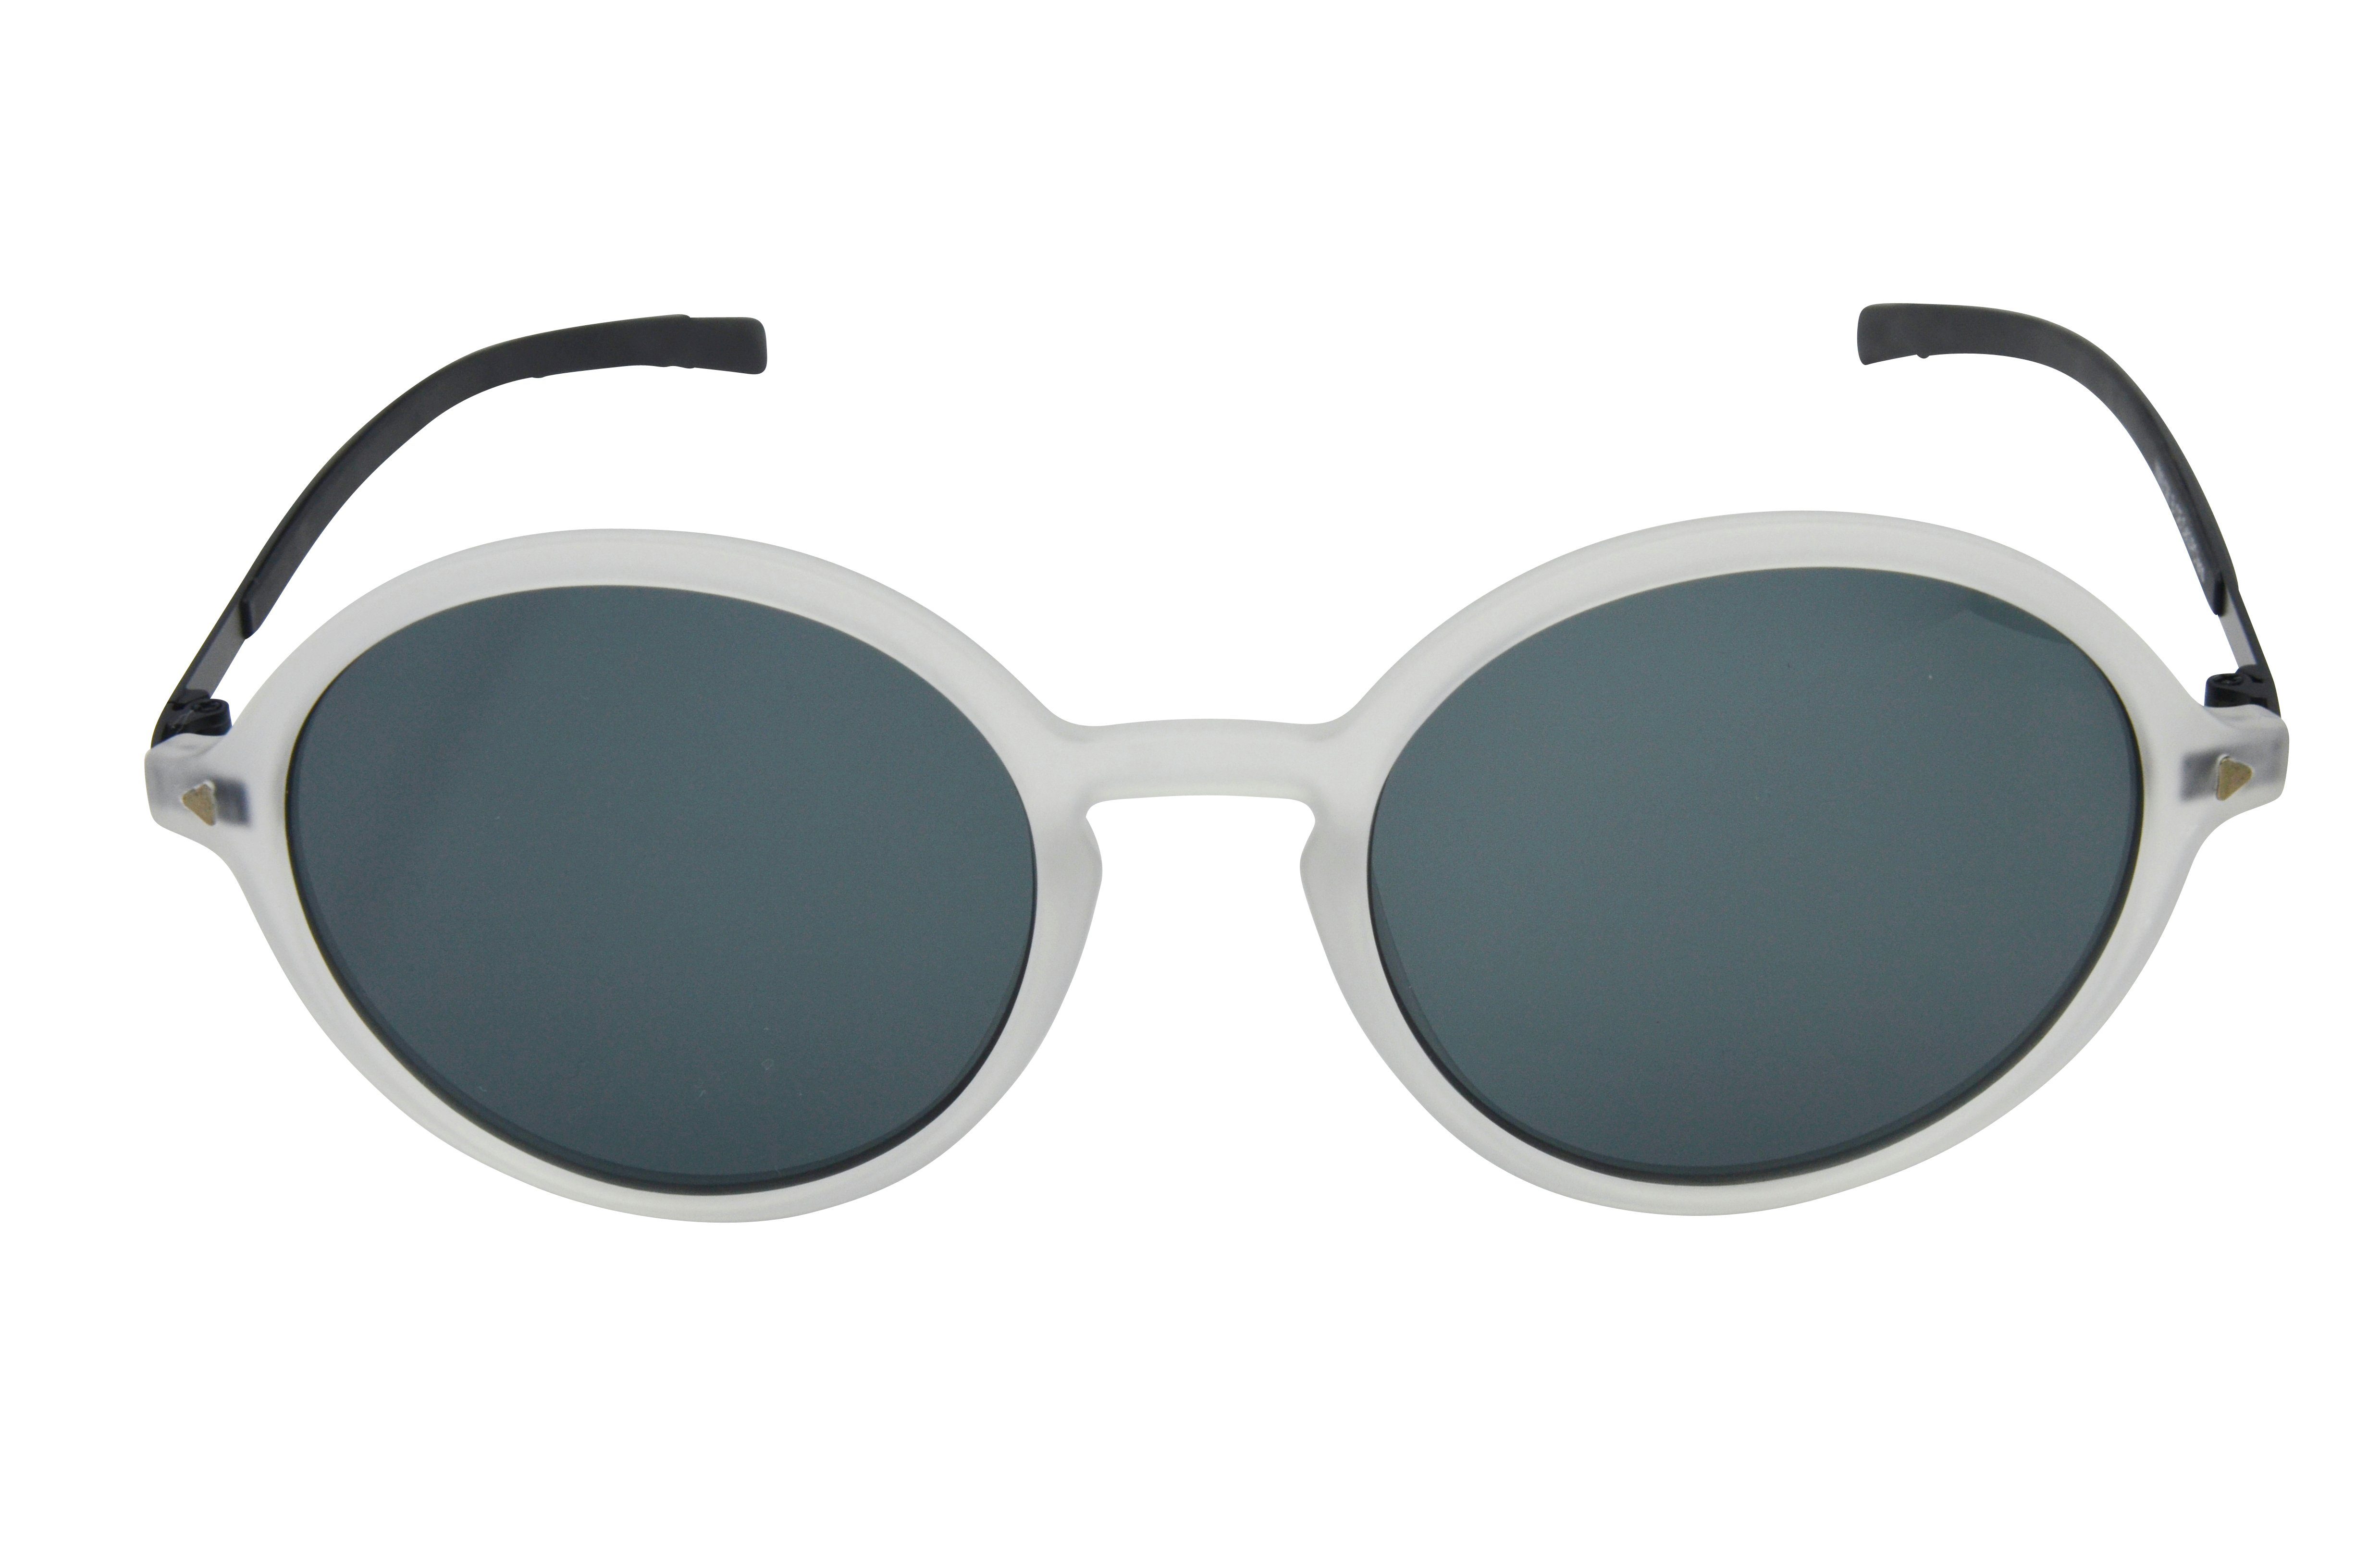 Sonnenbrille GAMSSTYLE pink, Gamswild blau, Metallbügel Damen, Mode schwarz weiß, Brille WM3128